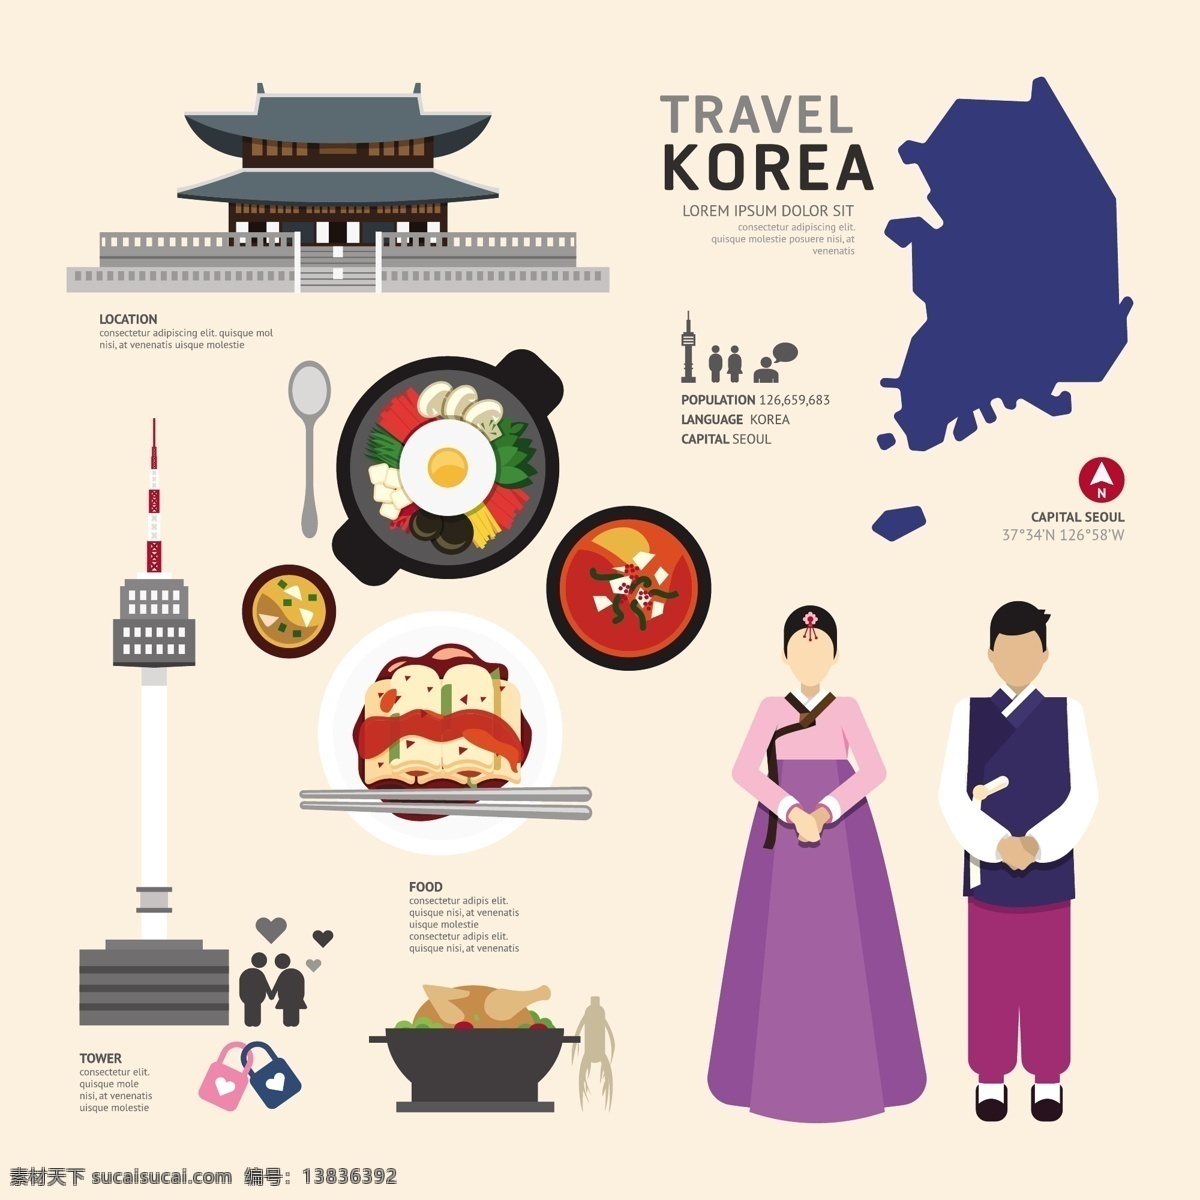 韩国文化元素 扁平化图标 文化特色图标 韩国旅游 旅行 旅游景点 著名景点 旅游图标 朝鲜服装 韩国料理 韩国美食 标志图标 其他图标